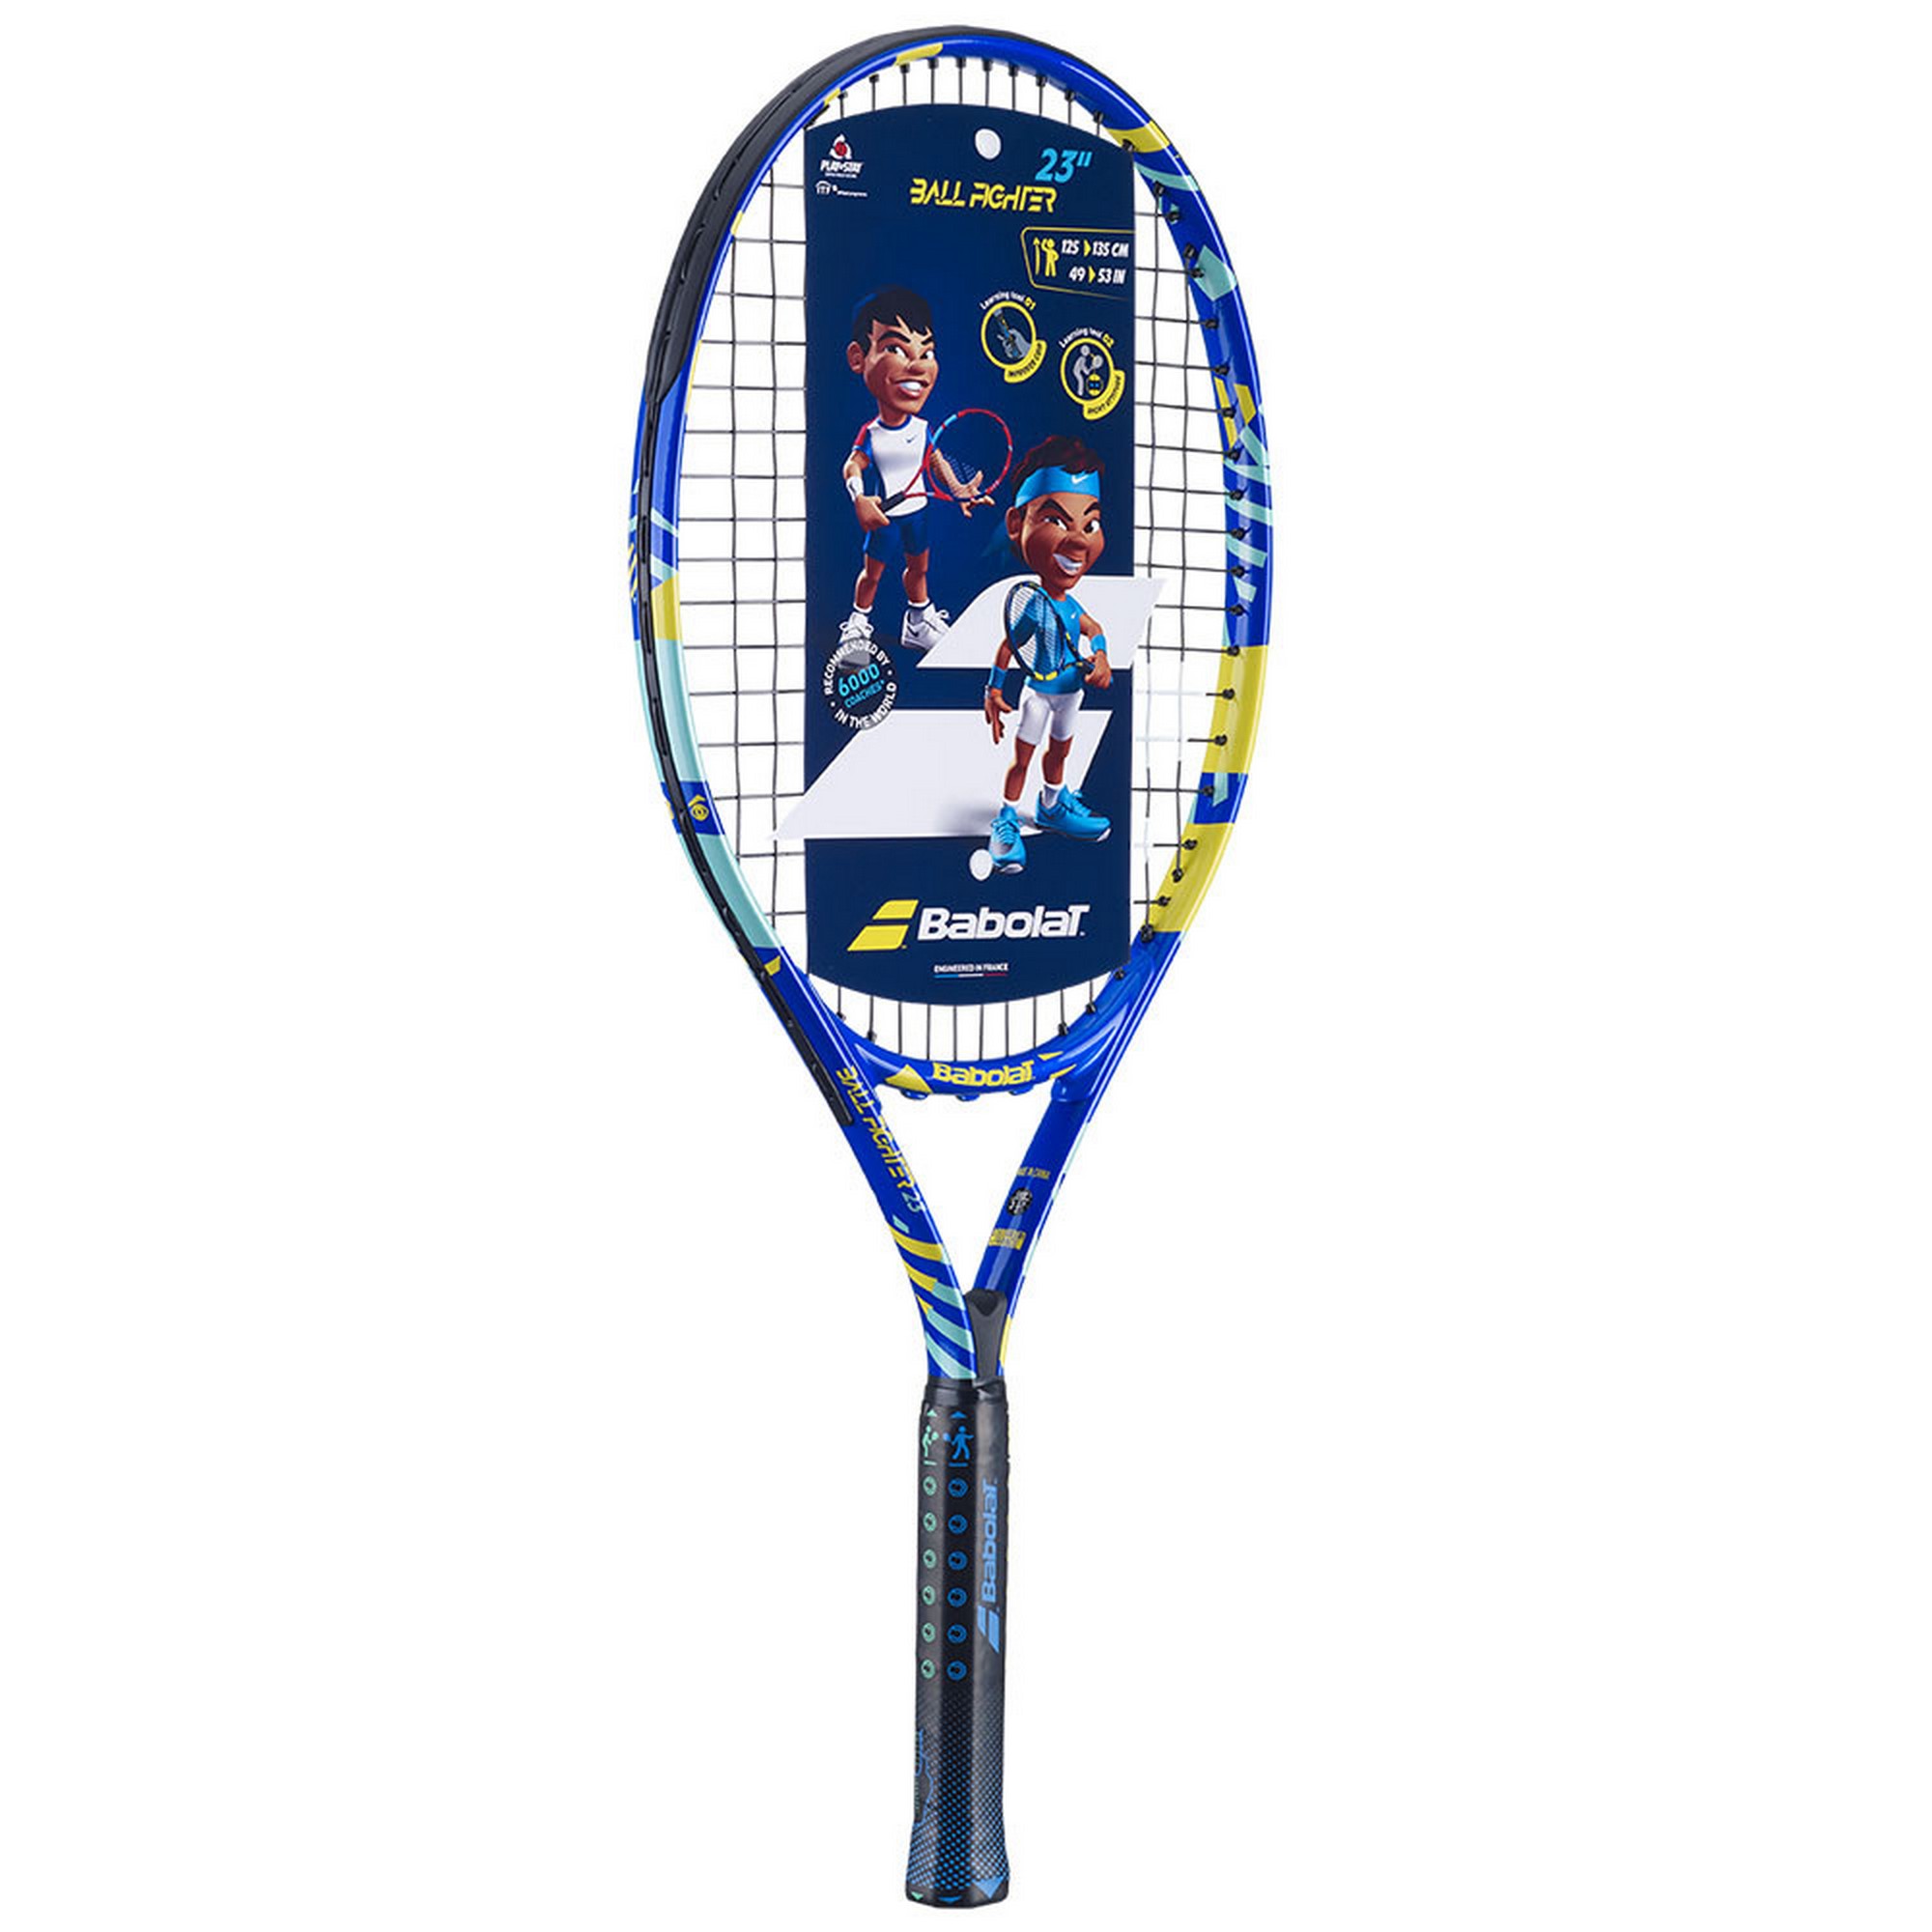 Ракетка для большого тенниса детская 7-9 лет Babolat Ballfighter 23 Gr000 140481 сине-желтый 2000_2000